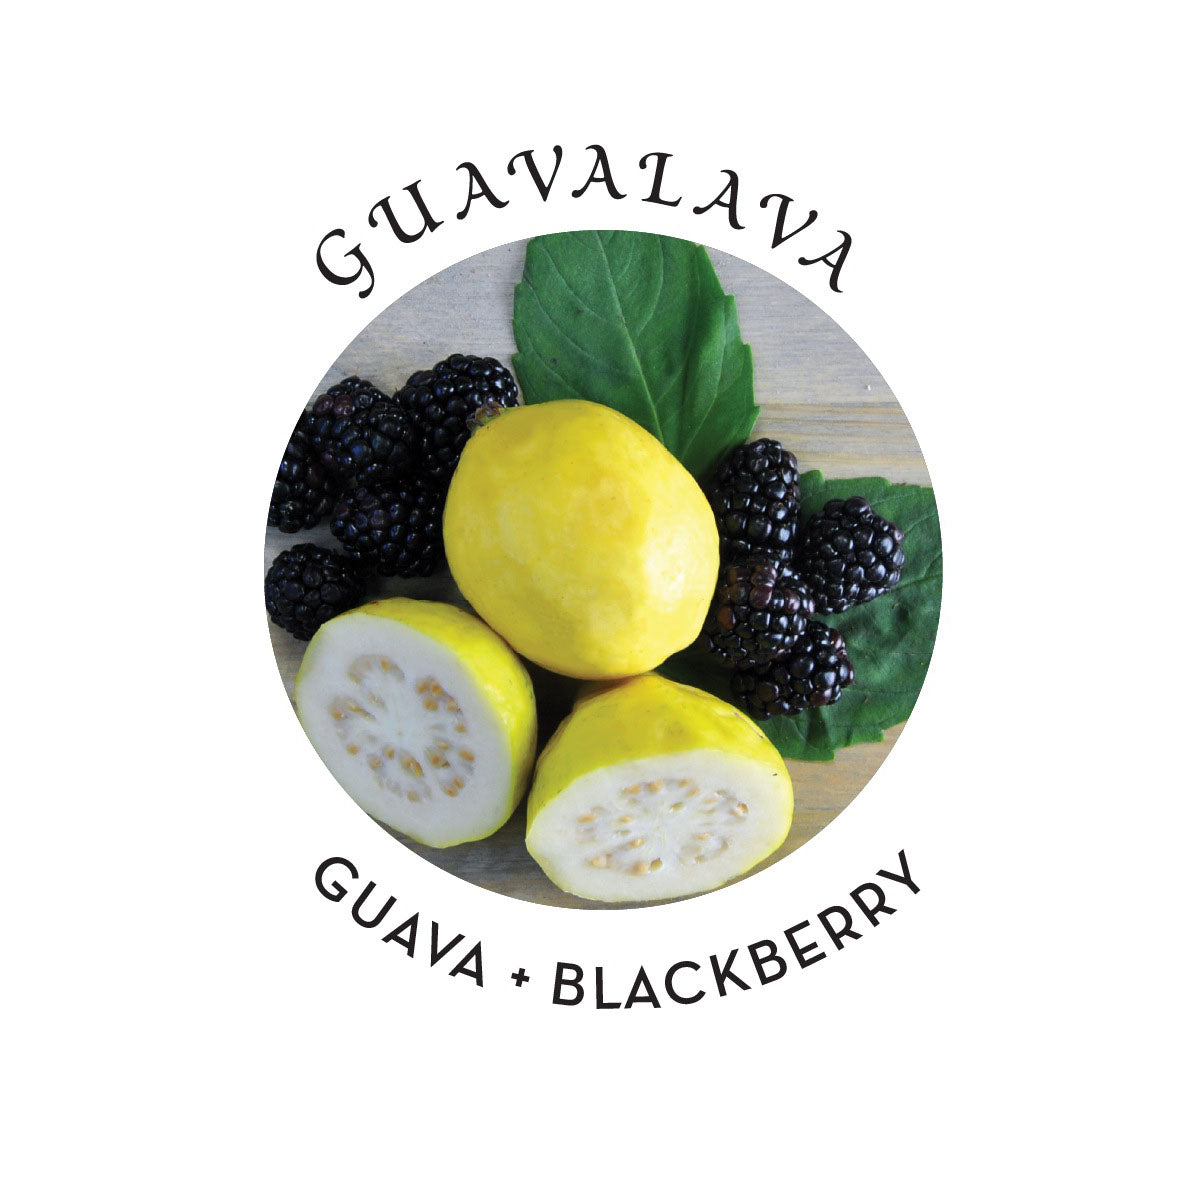 Huile de massage aux graines de chanvre Earthly Body - Guavalava, 8 oz/236 ml